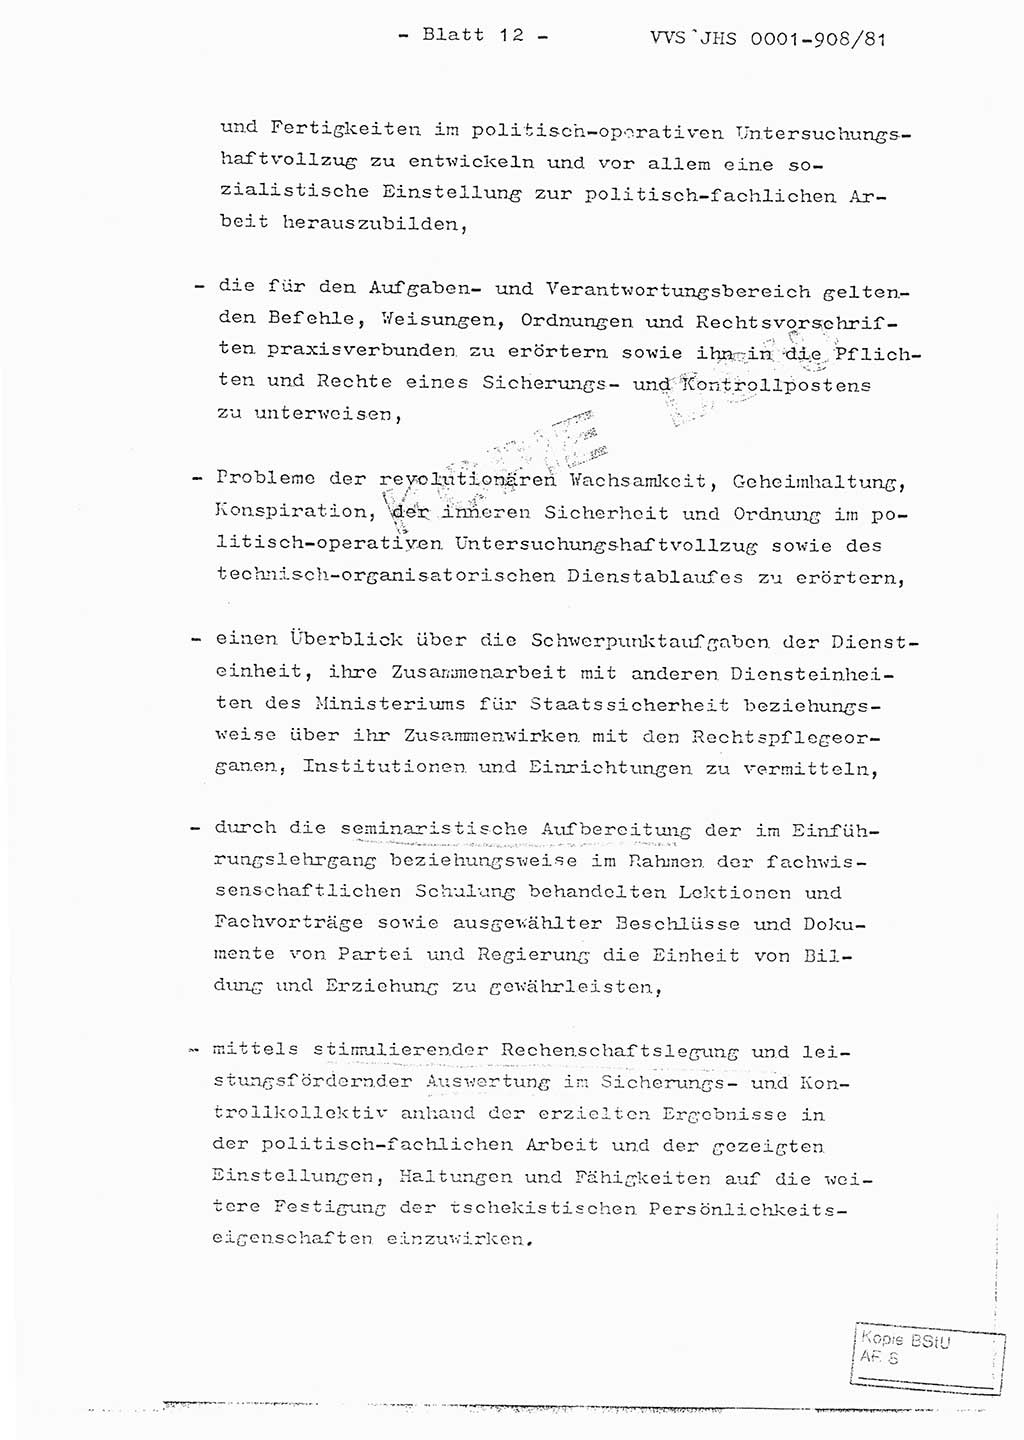 Fachschulabschlußarbeit Oberleutnant Wolfgang Wittmann (Abt. ⅩⅣ), Ministerium für Staatssicherheit (MfS) [Deutsche Demokratische Republik (DDR)], Juristische Hochschule (JHS), Vertrauliche Verschlußsache (VVS) o001-908/82, Potsdam 1982, Blatt 12 (FS-Abschl.-Arb. MfS DDR JHS VVS o001-908/82 1982, Bl. 12)